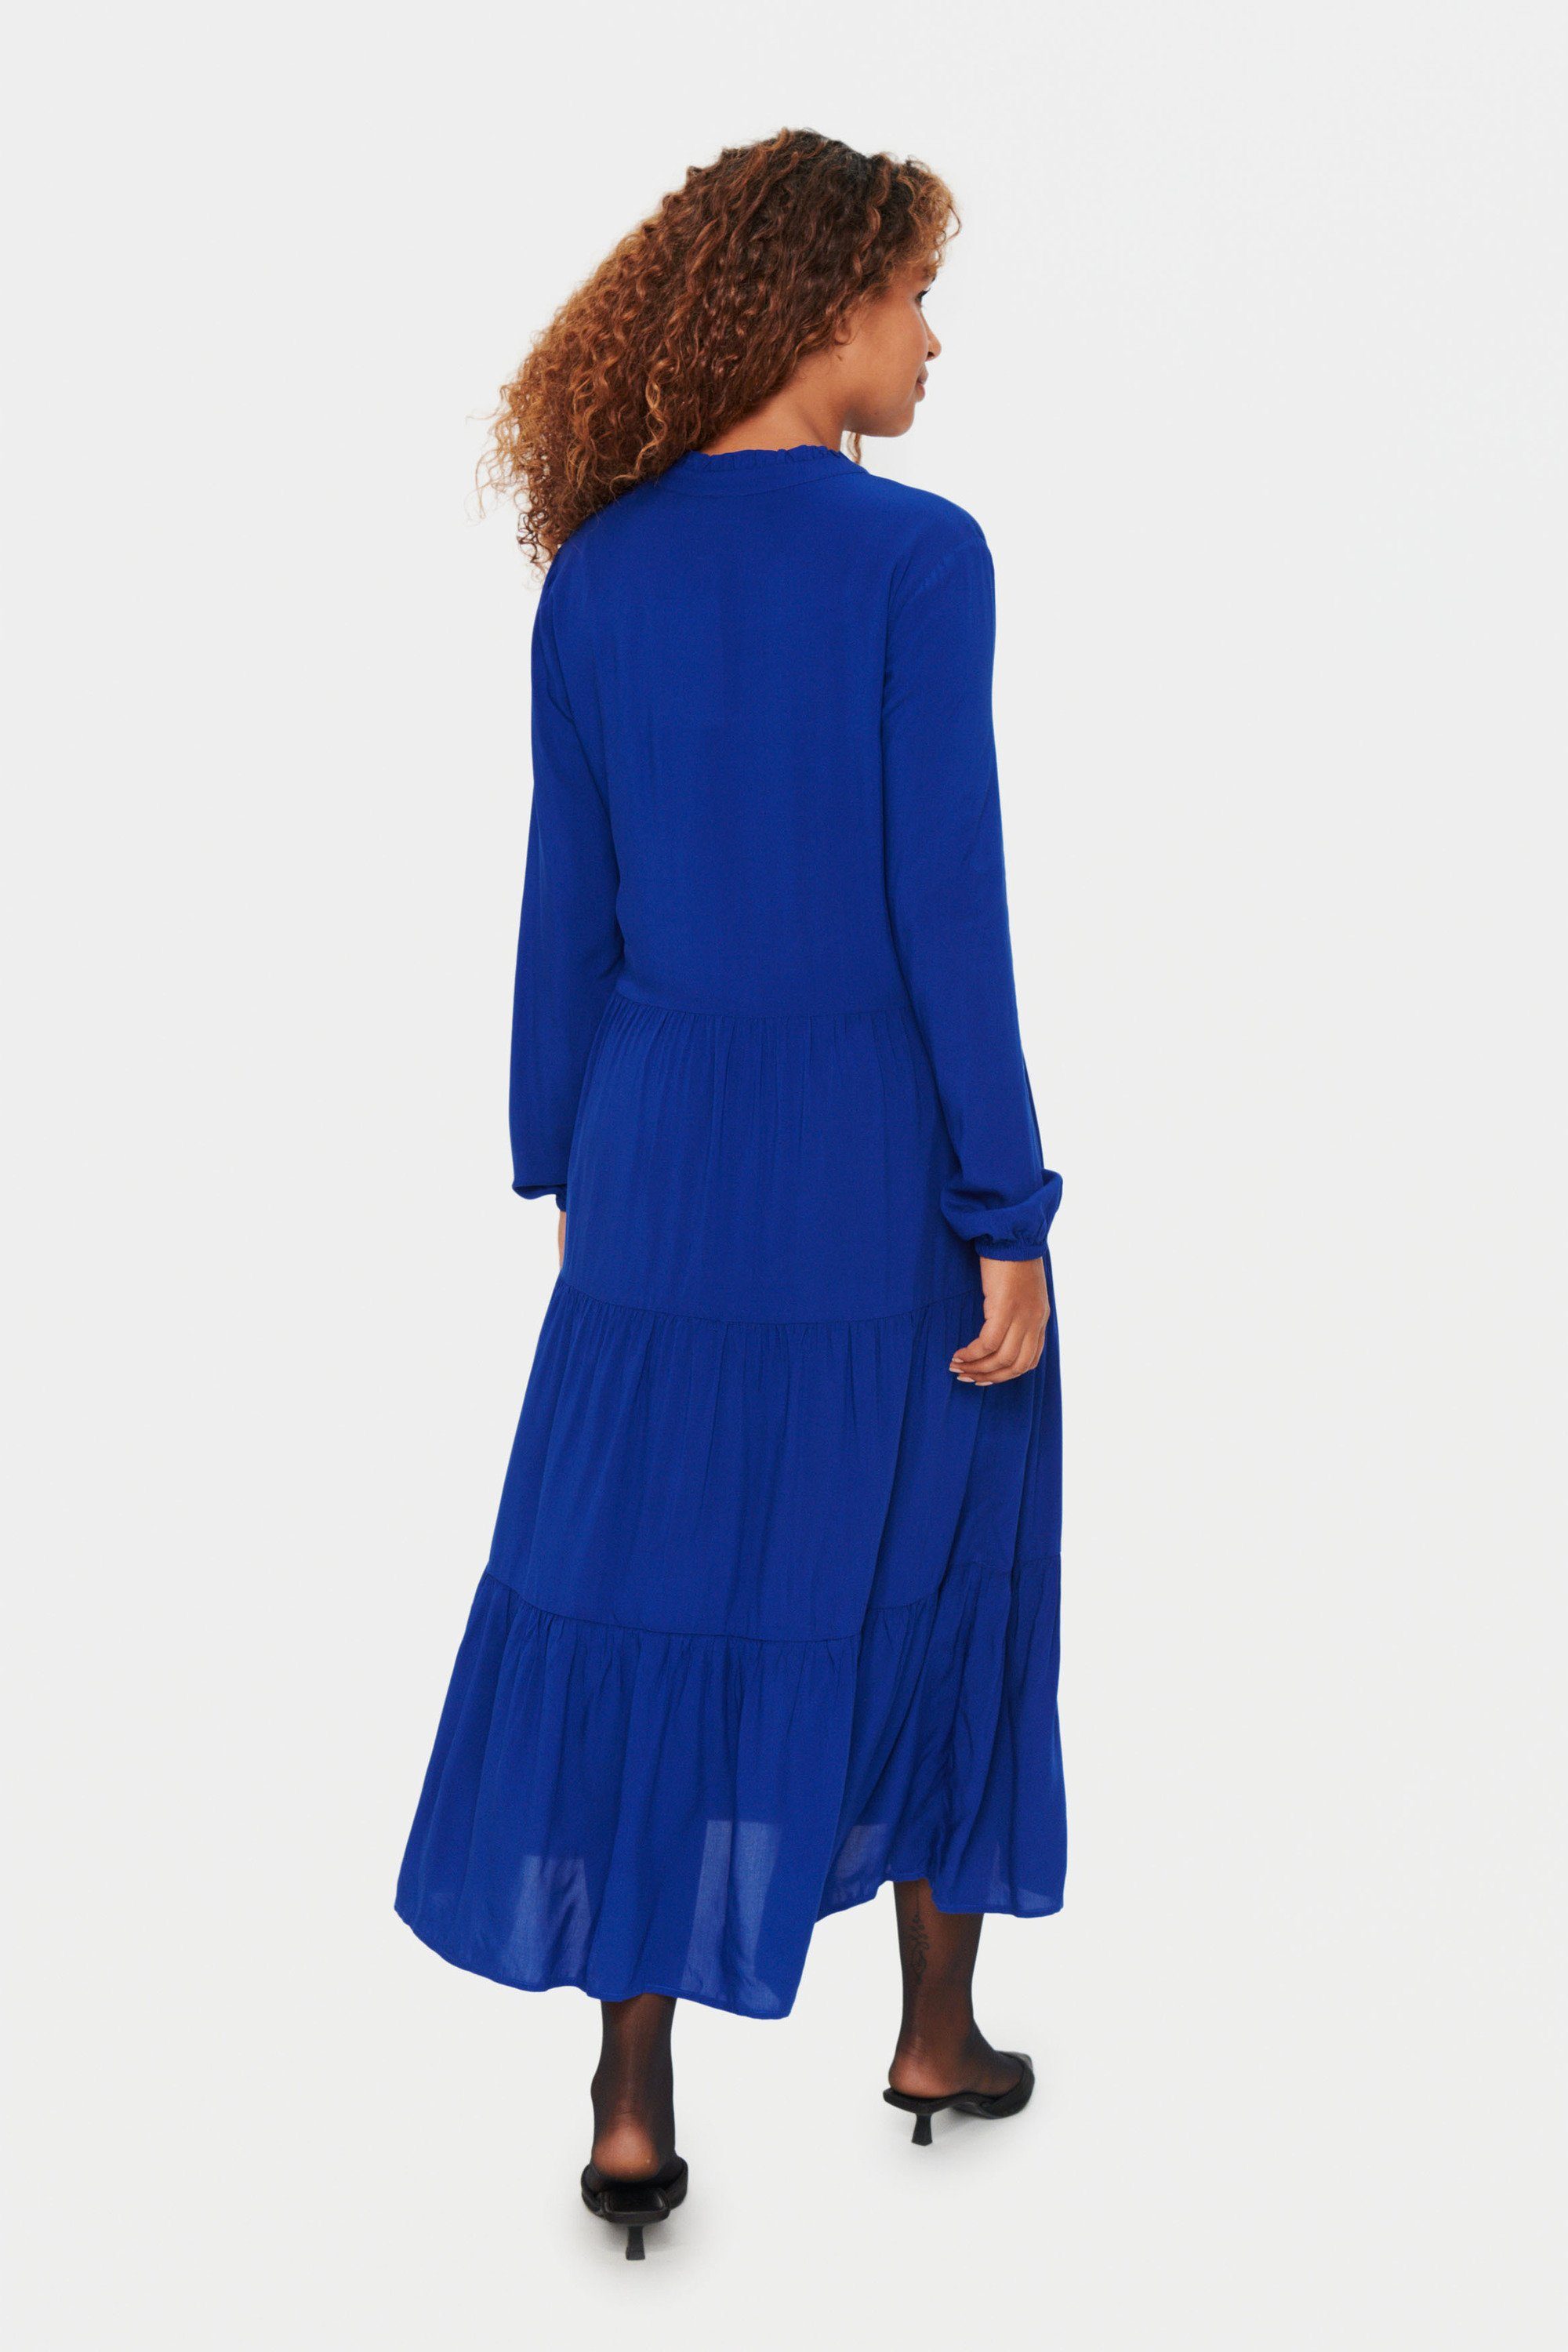 Saint Tropez Jerseykleid Kleid EdaSZ Blue Sodalite